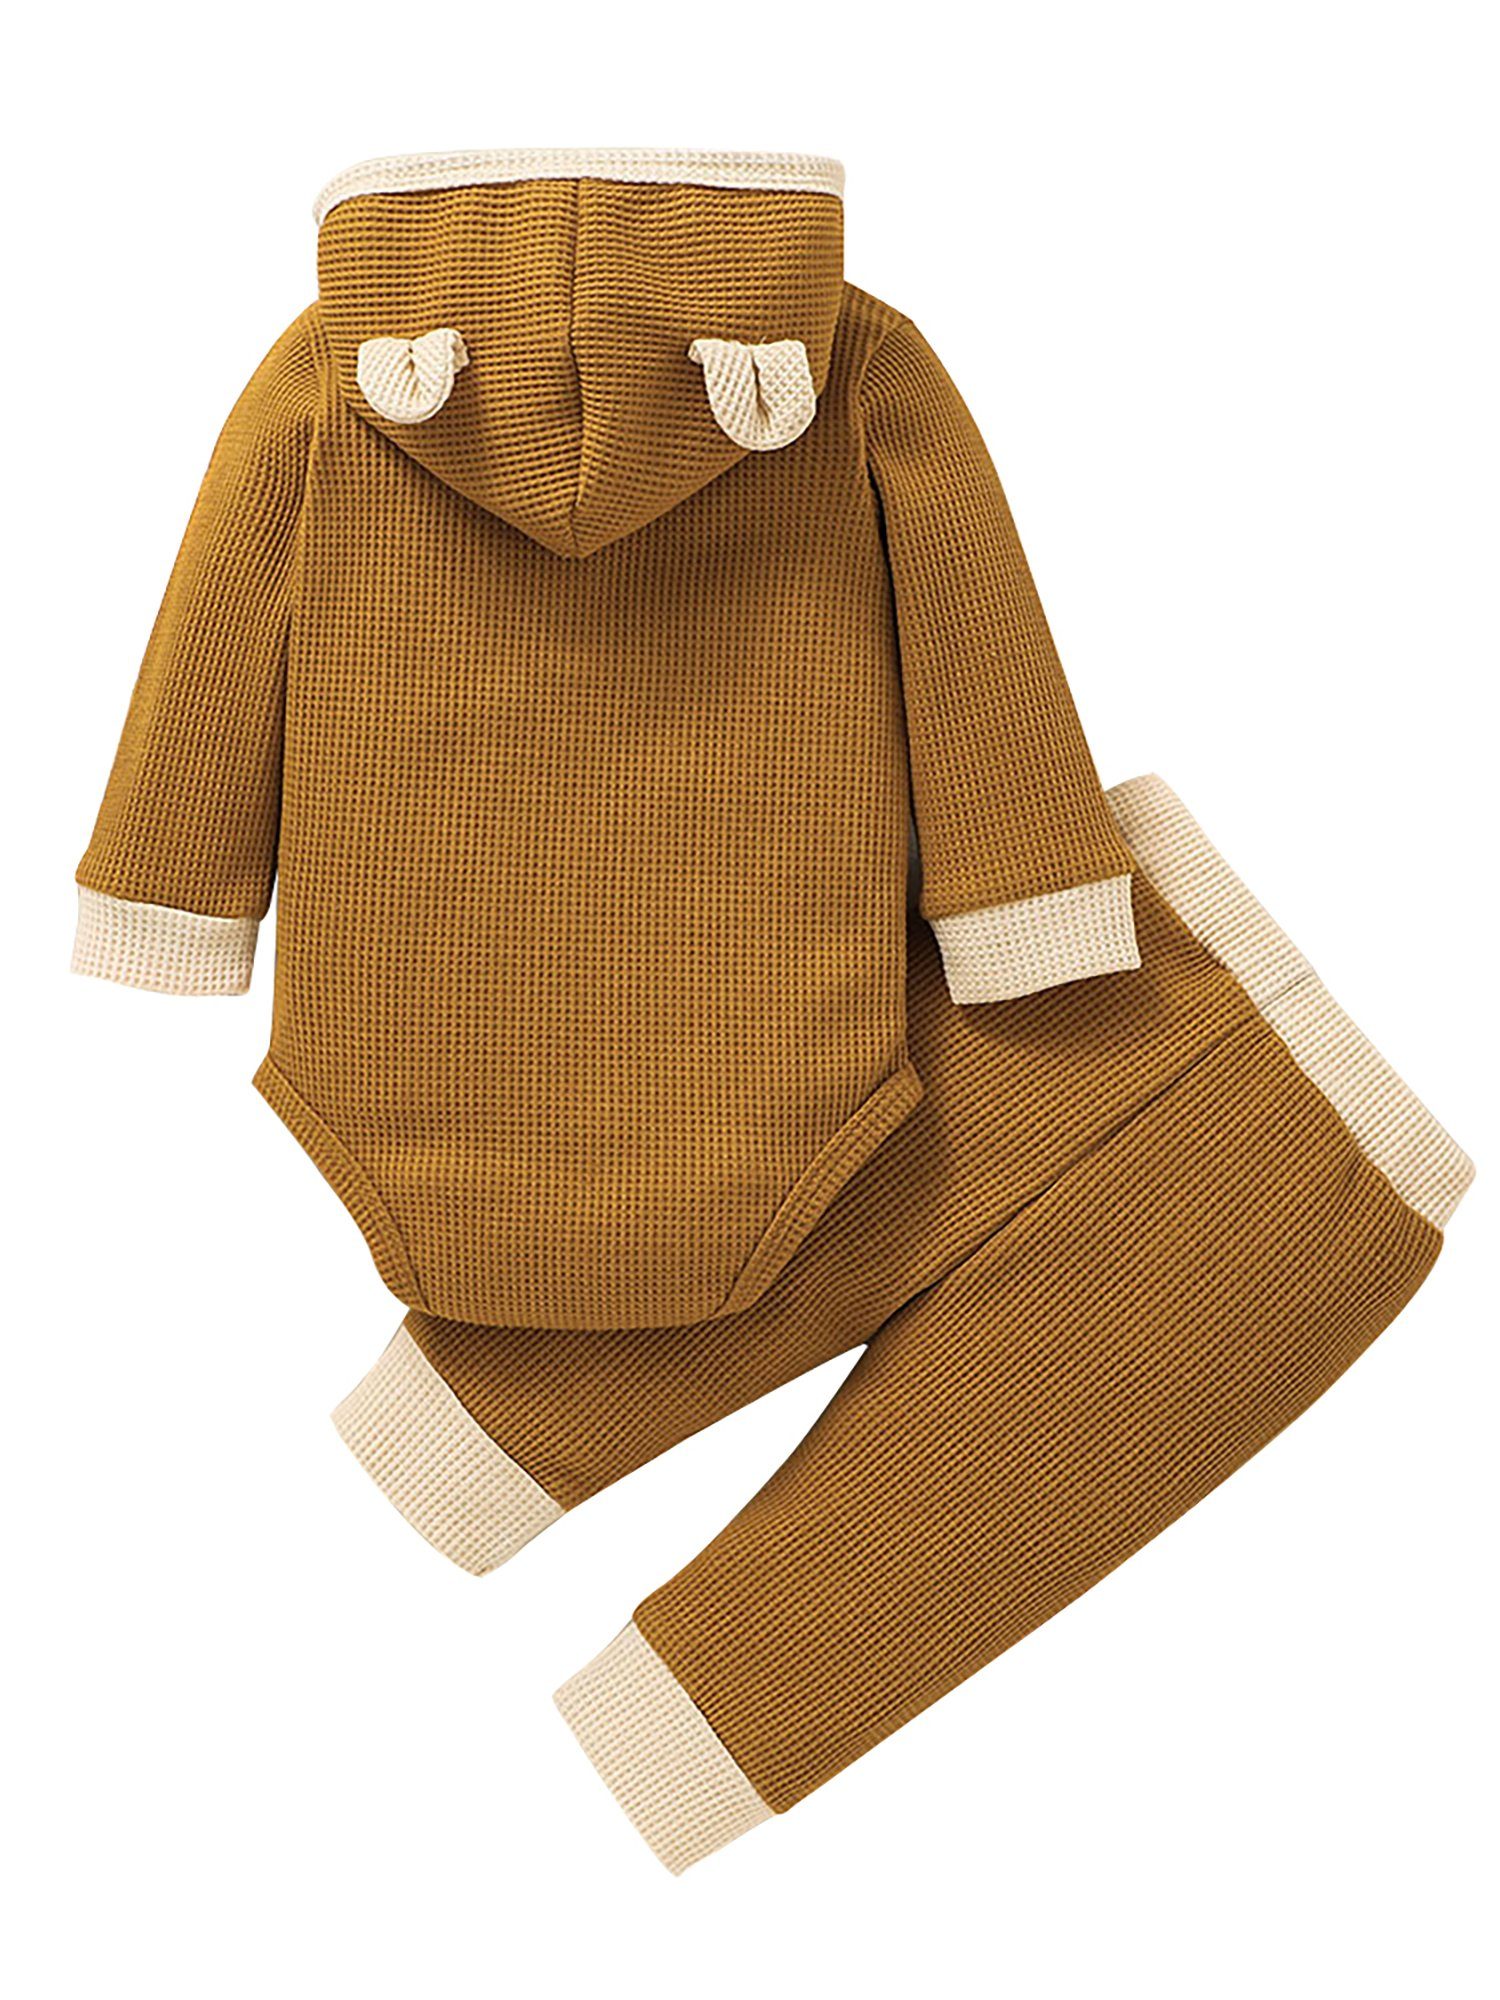 Kinder Jungen (Gr. 50 - 92) LAPA Shirt & Hose Frühling dünn Stoff Baby-Set, Strampler & Hose